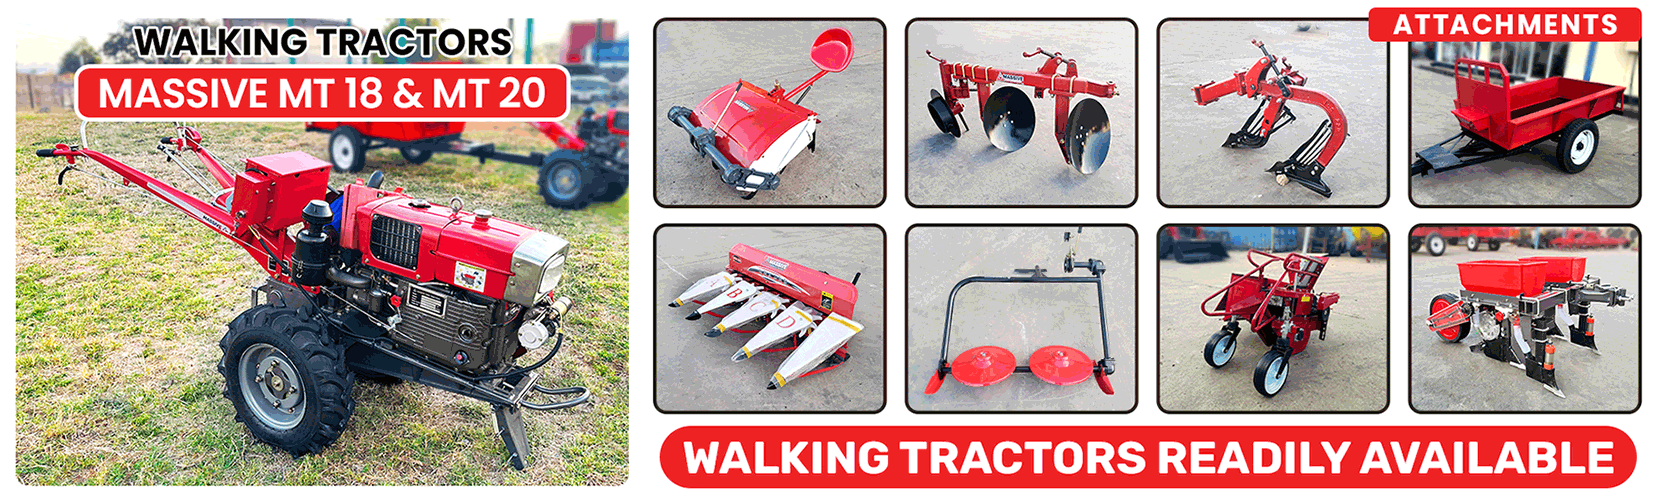 Walking Tractors for Sale in Zambia